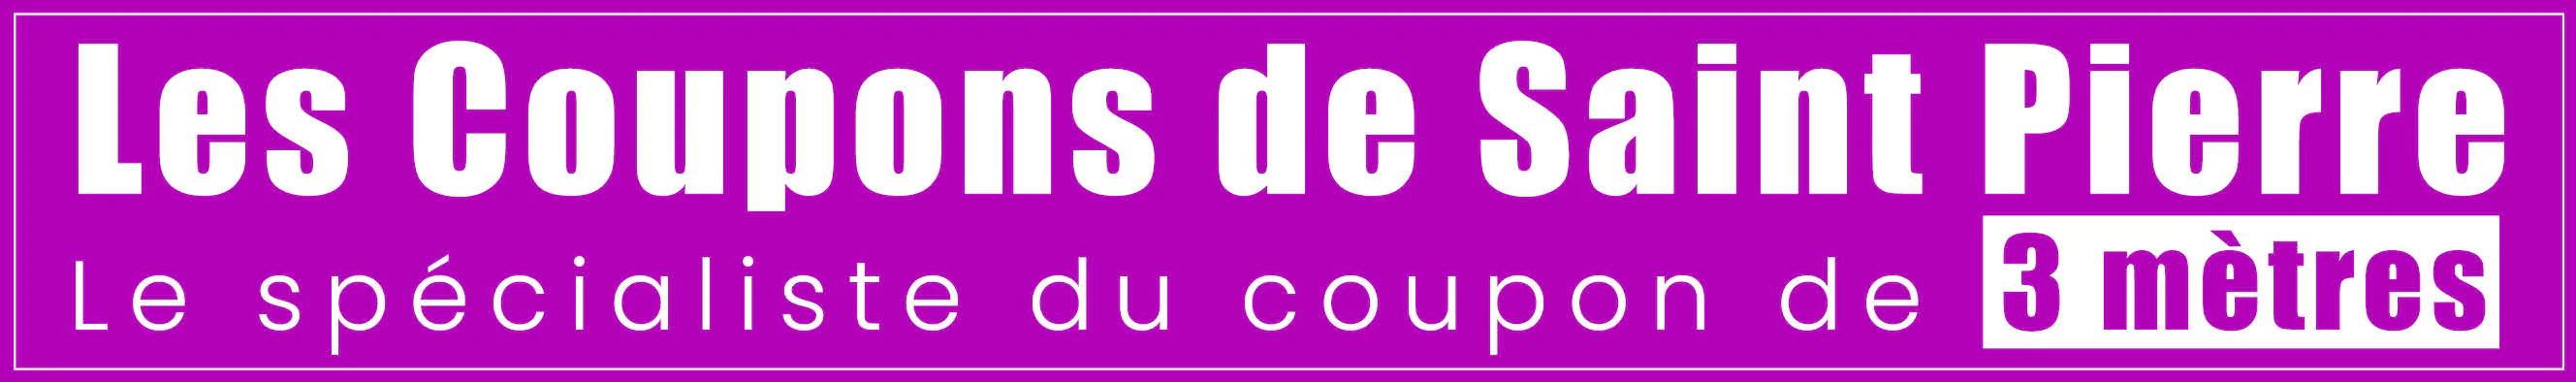 Logo Les Coupons de Saint Pierre